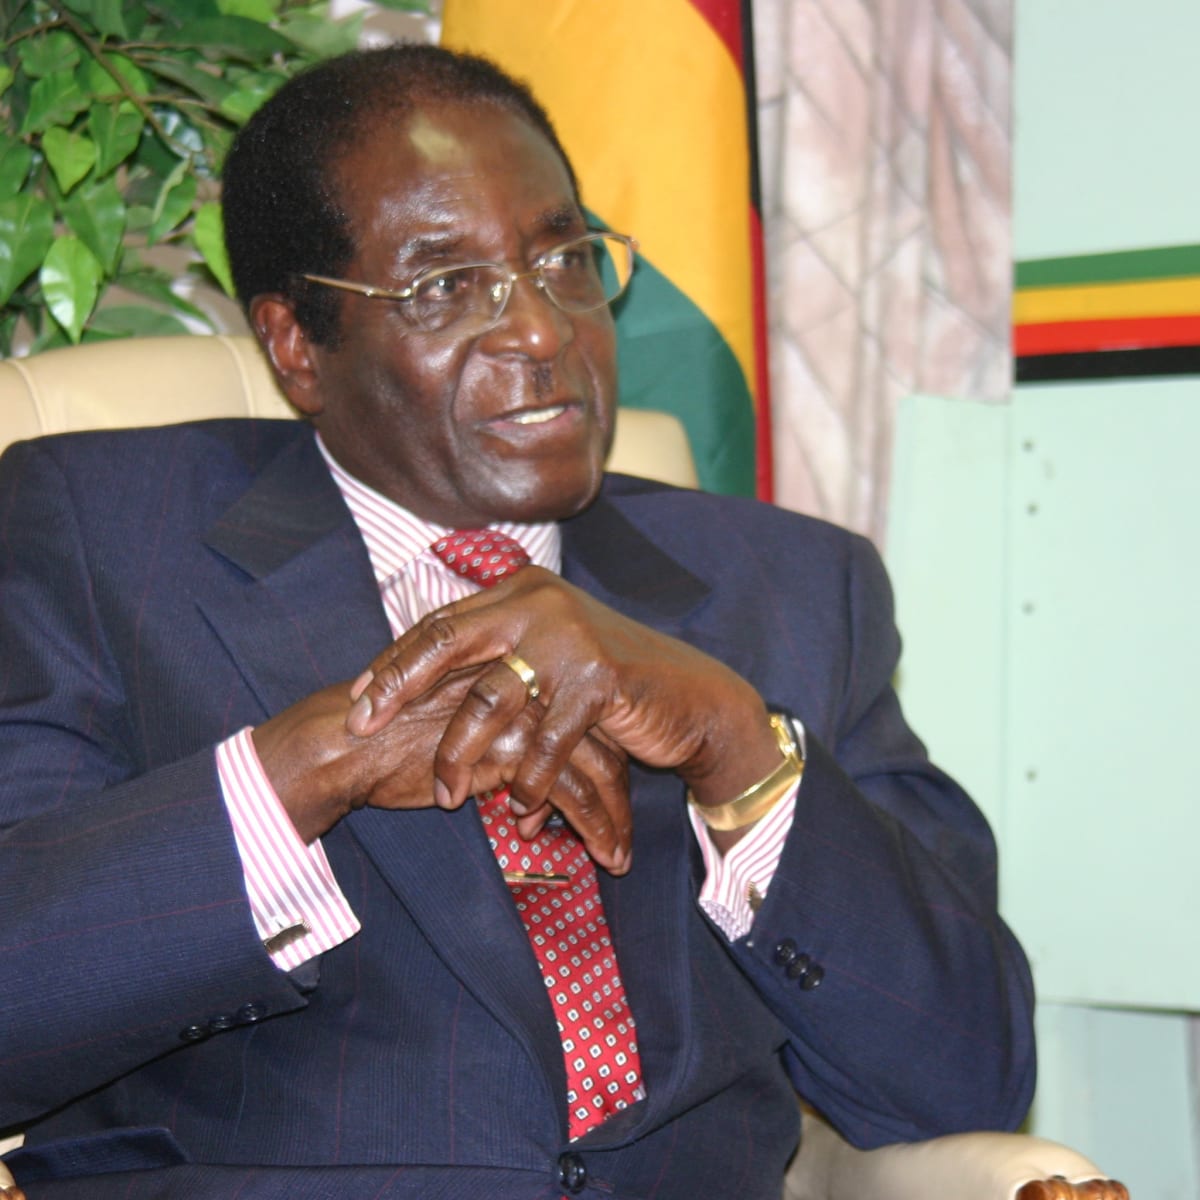 Robert Mugabe s'adresse à la jeunesse du Zimbabwe : "Quand vous faites l’amour avec une femme d’une autre nationalité, faites le très bien car c'est toute la nation que vous représentez.”